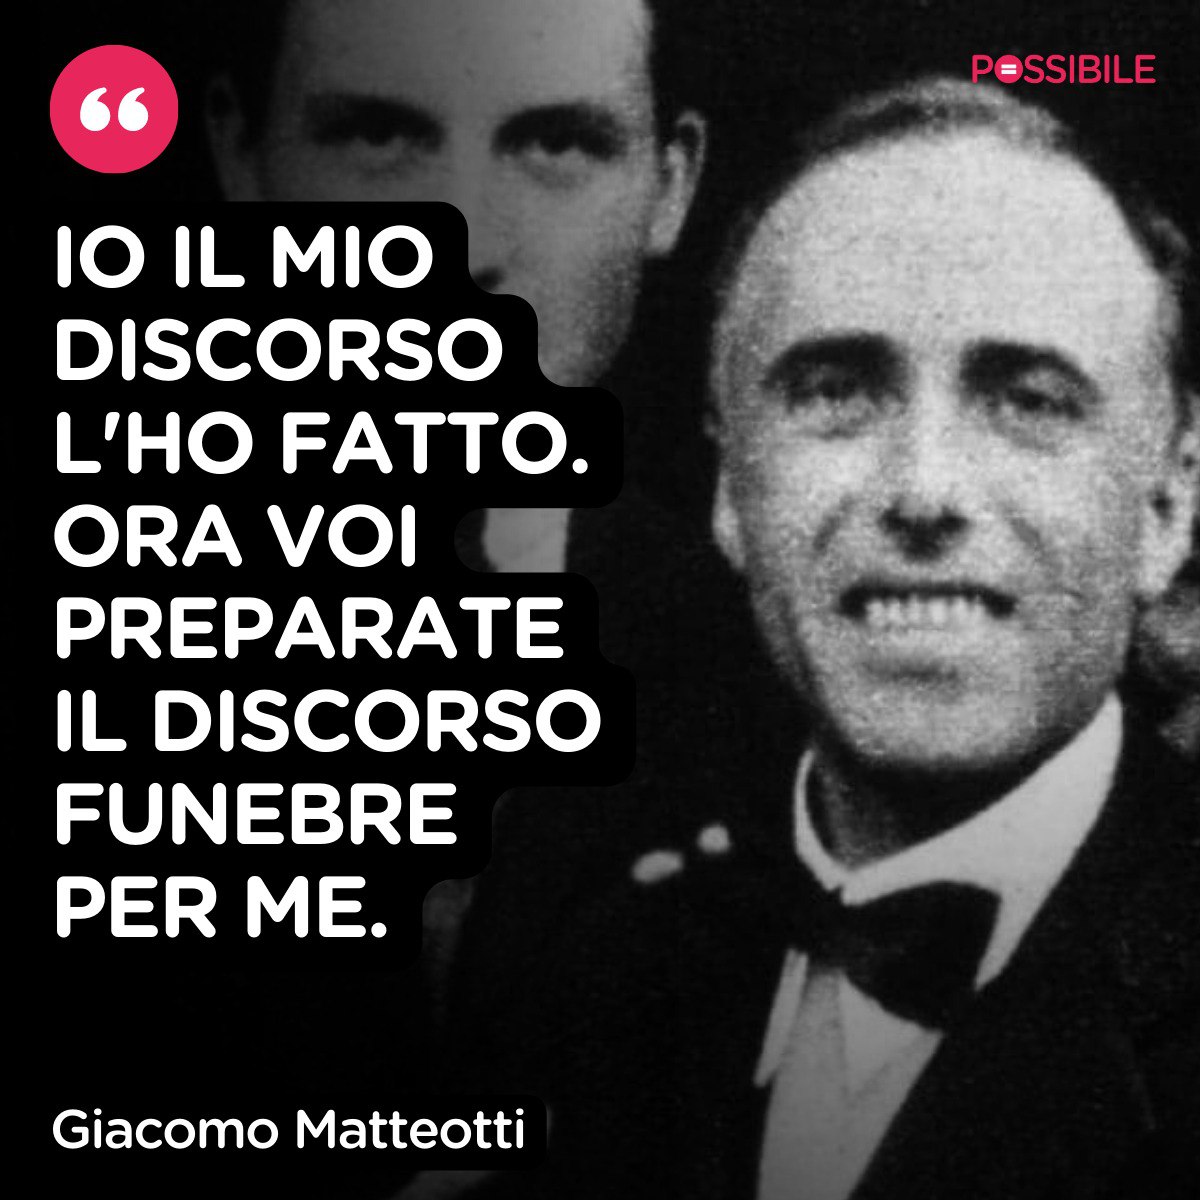 Il #30maggio di 99 anni fa Giacomo #Matteotti denunciò in un discorso alla Camera i brogli elettorali del regime fascista e smascherò la violenza subita dai candidati antifascisti. Fu ucciso pochi giorni dopo. 

Antifasciste, antifascisti sempre.